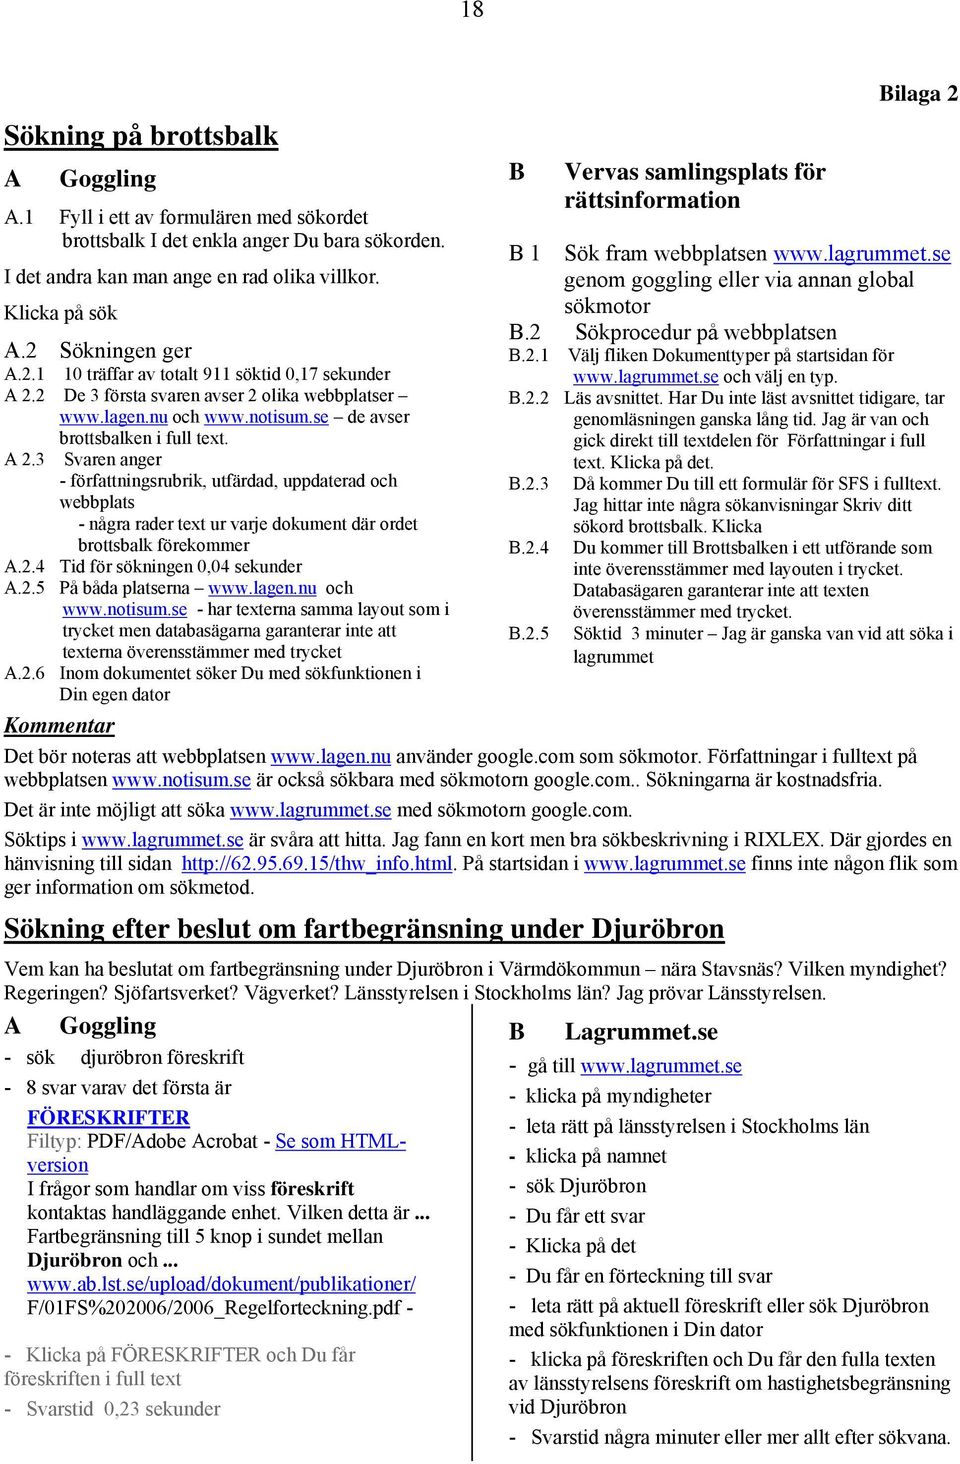 2 De 3 första svaren avser 2 olika webbplatser www.lagen.nu och www.notisum.se de avser brottsbalken i full text. A 2.